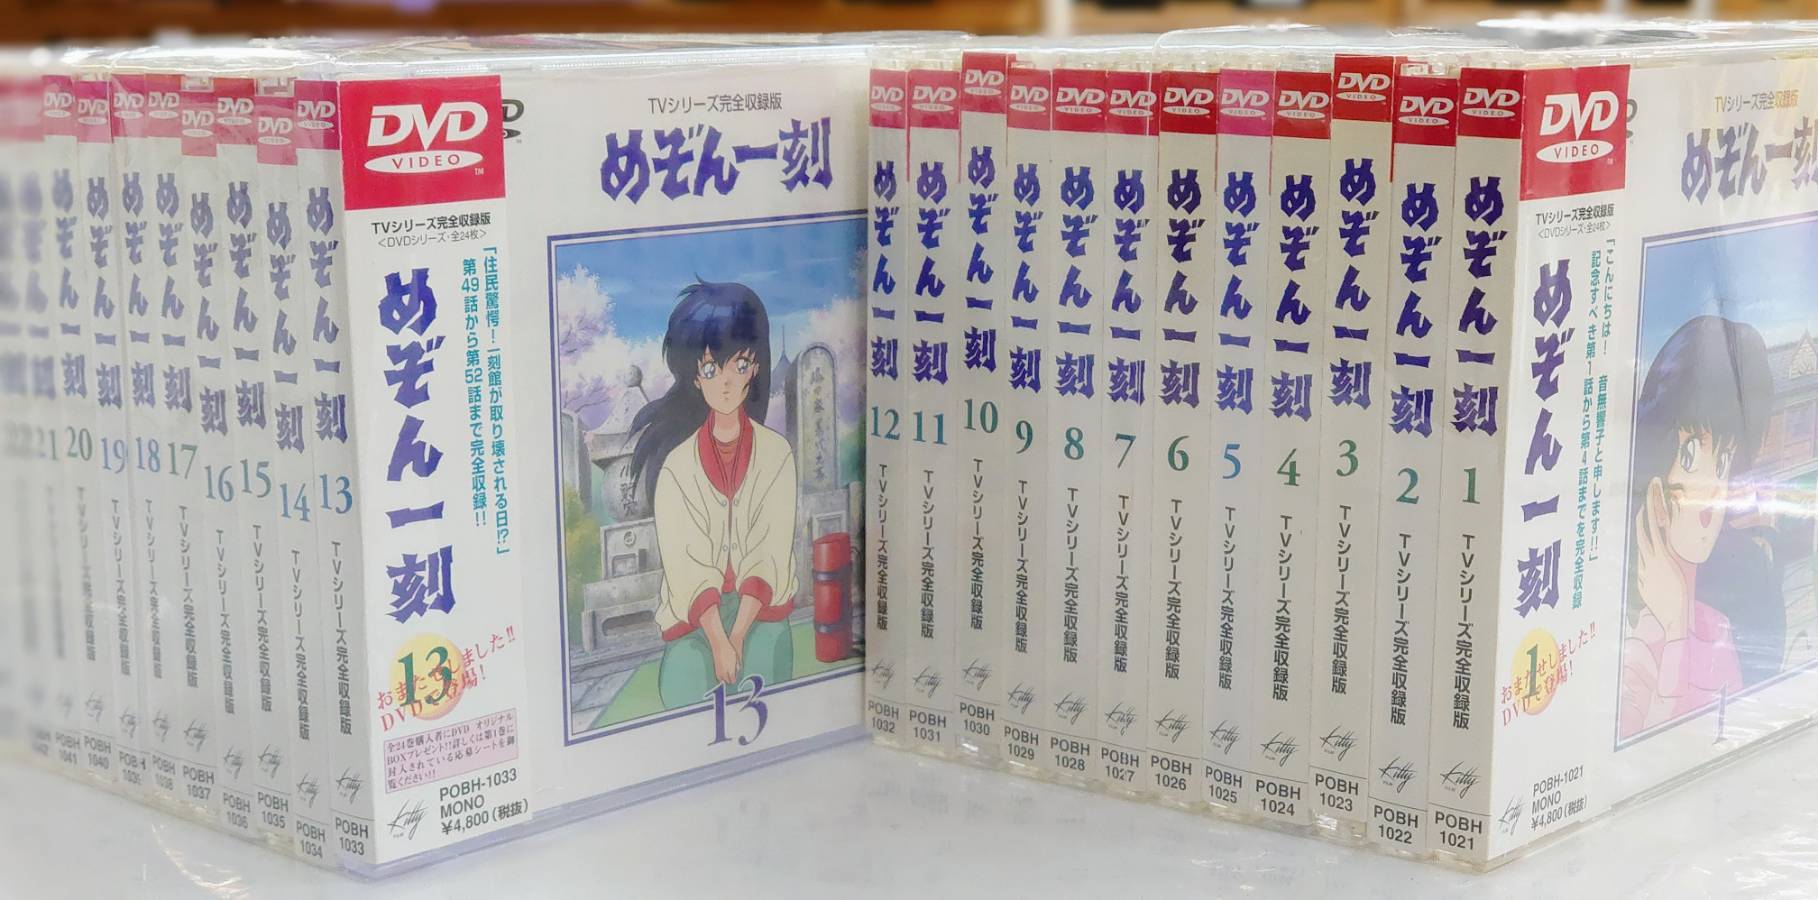 めぞん一刻DVD全24枚BOX 売上げNo.1 icqn.de